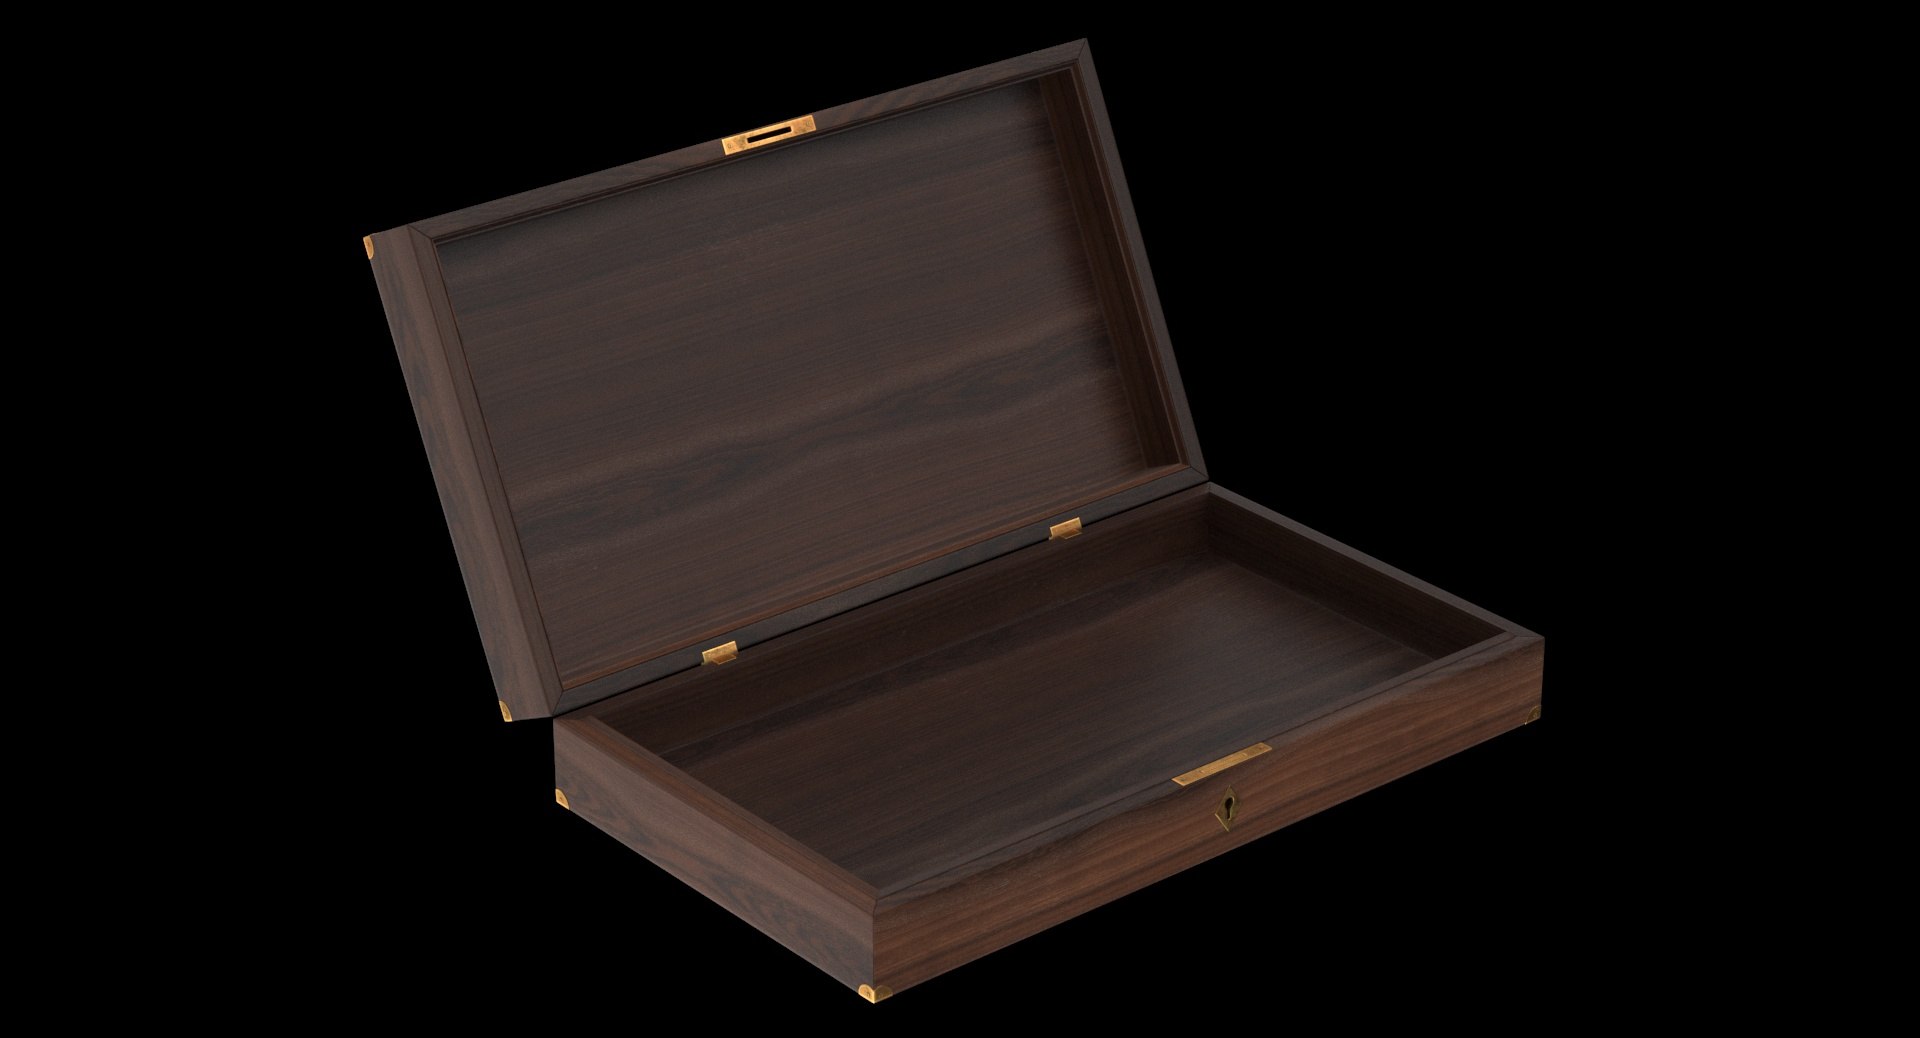 3D wooden box model - TurboSquid 1253530